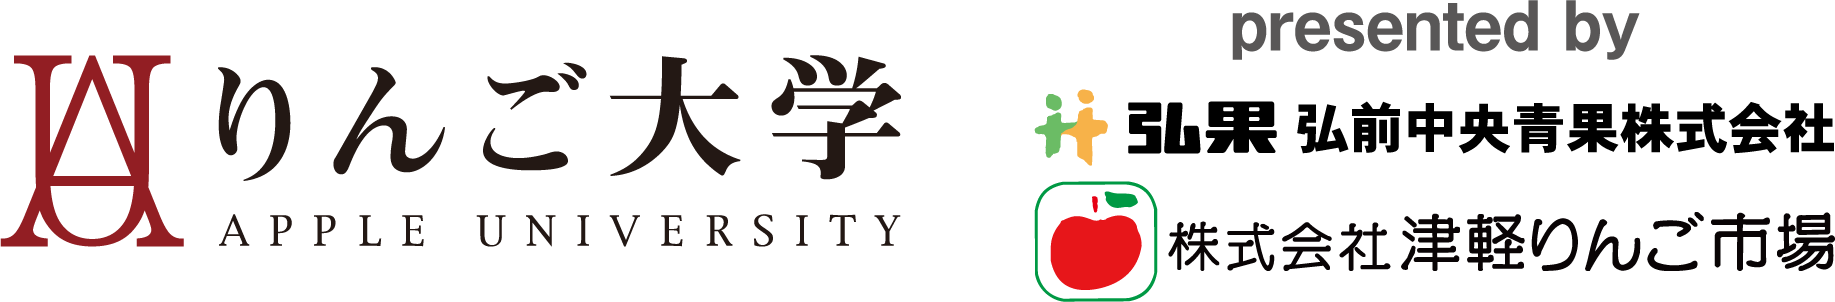 りんご大学ロゴ